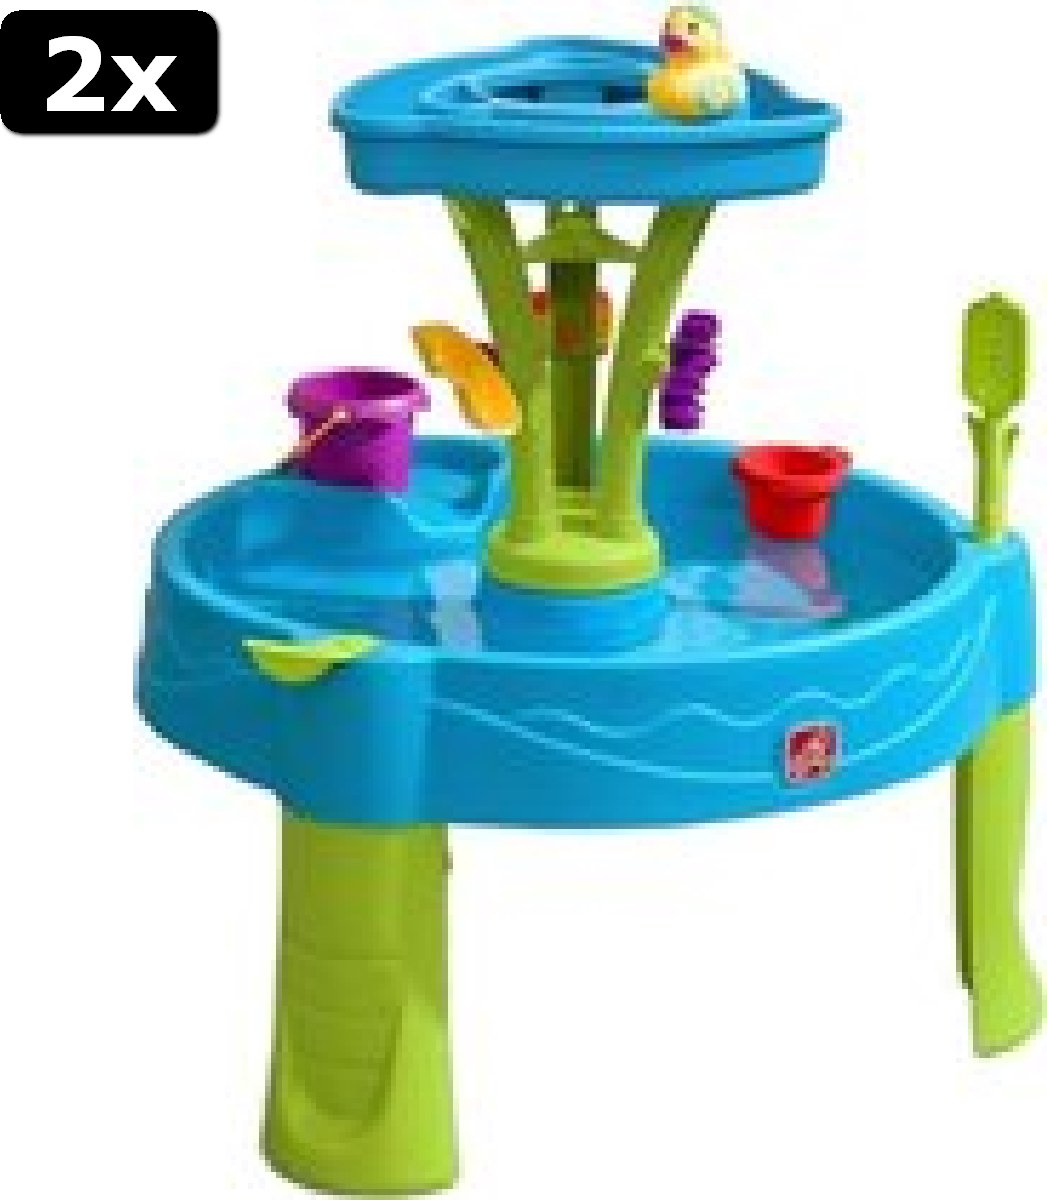 2x Step2 Summer Showers Splash Watertafel - Met 8 accessoires - Waterspeelgoed voor kind - Activiteitentafel met water voor de tuin / buiten